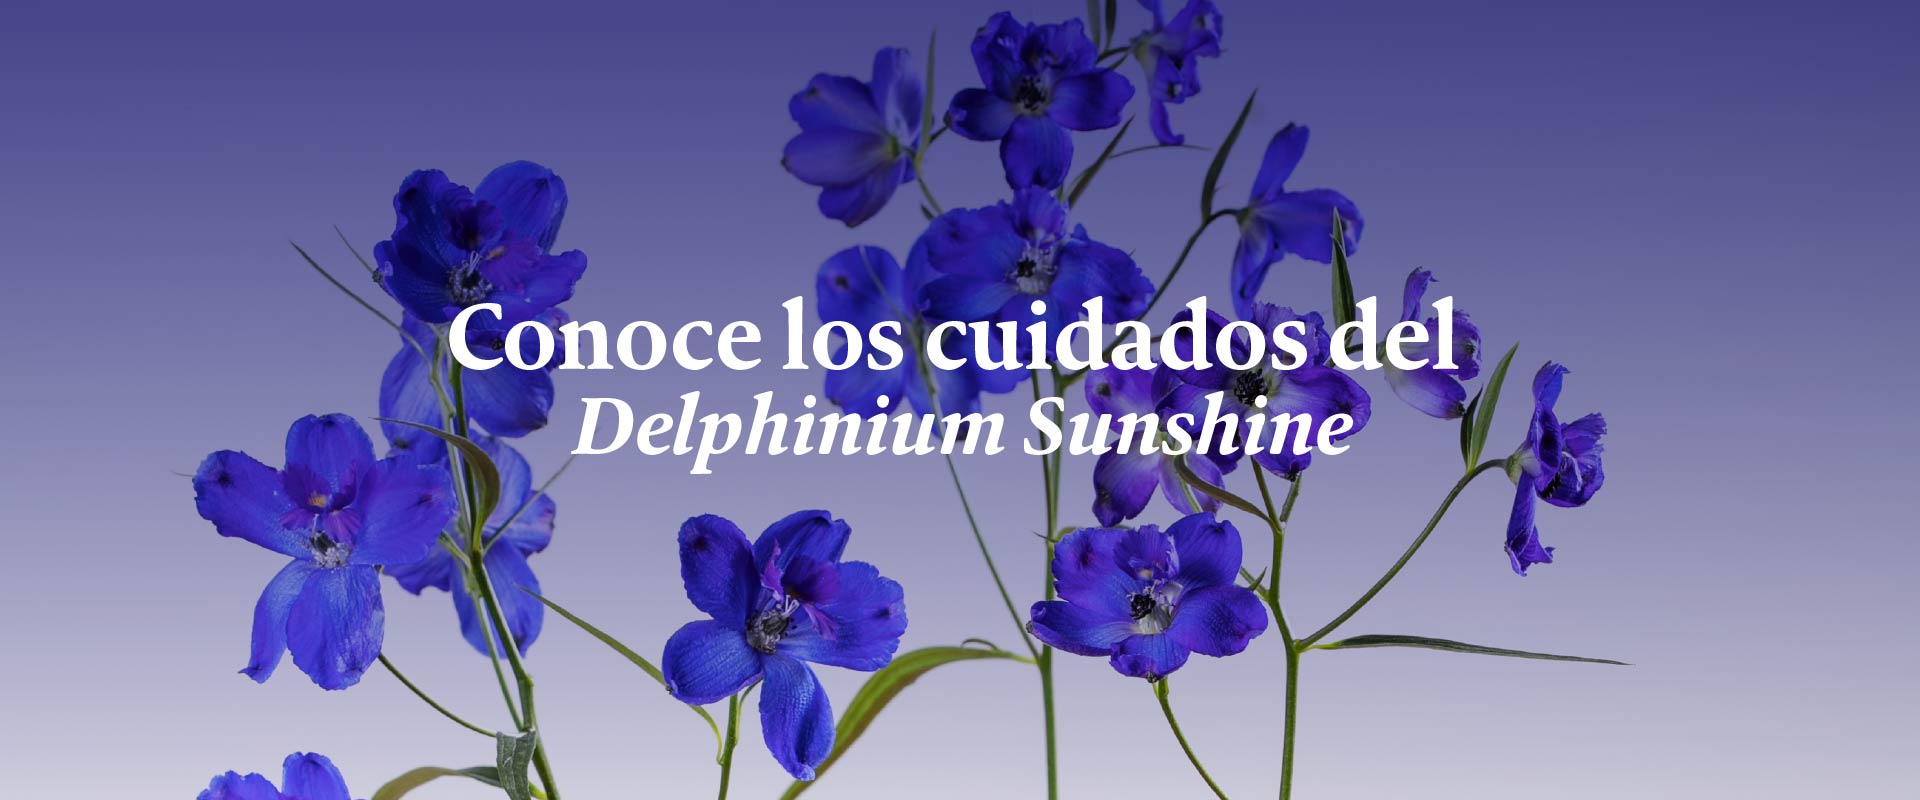 ¡No las podes! ¿Qué sabes sobre los cuidados de los Delphinium Sunshine?